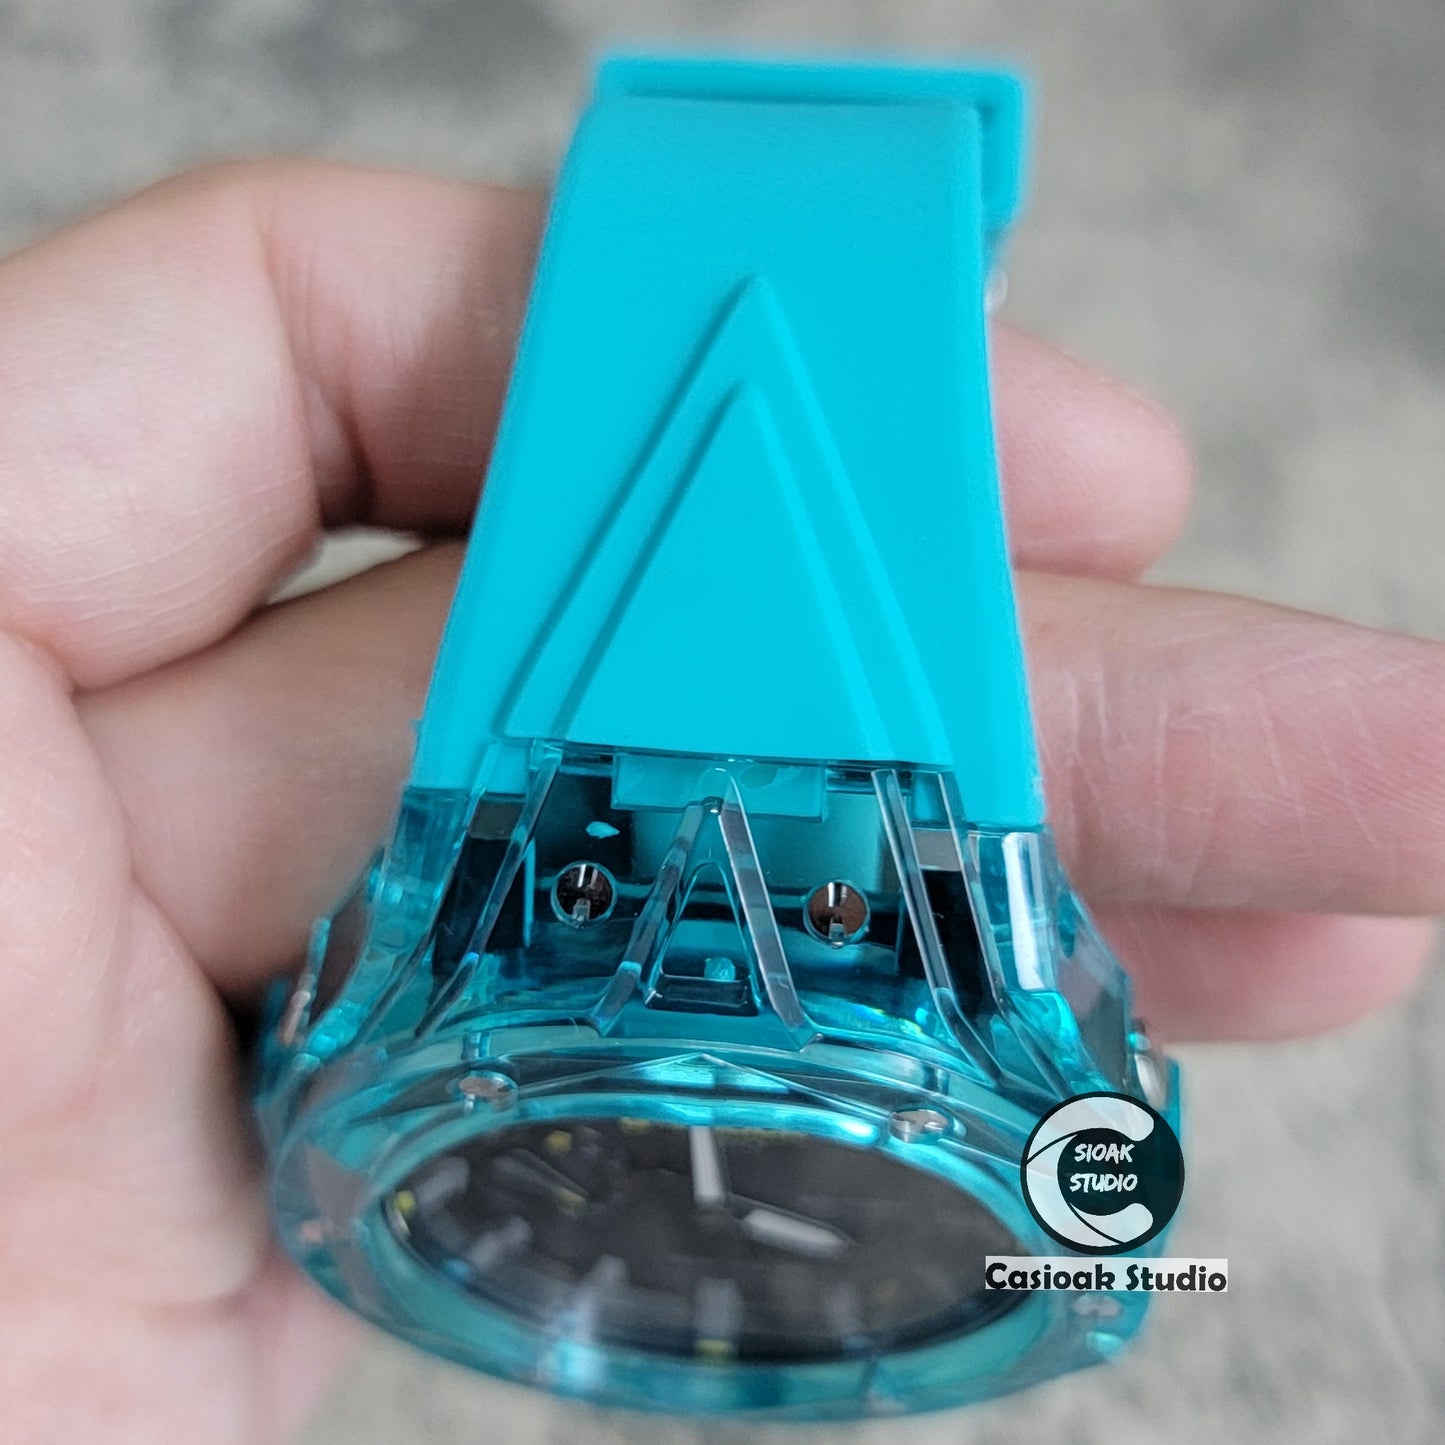 Casioak Mod Watch Transparent Case White Strap Silver Time Mark Silver Dial 44mm - Casioak Studio